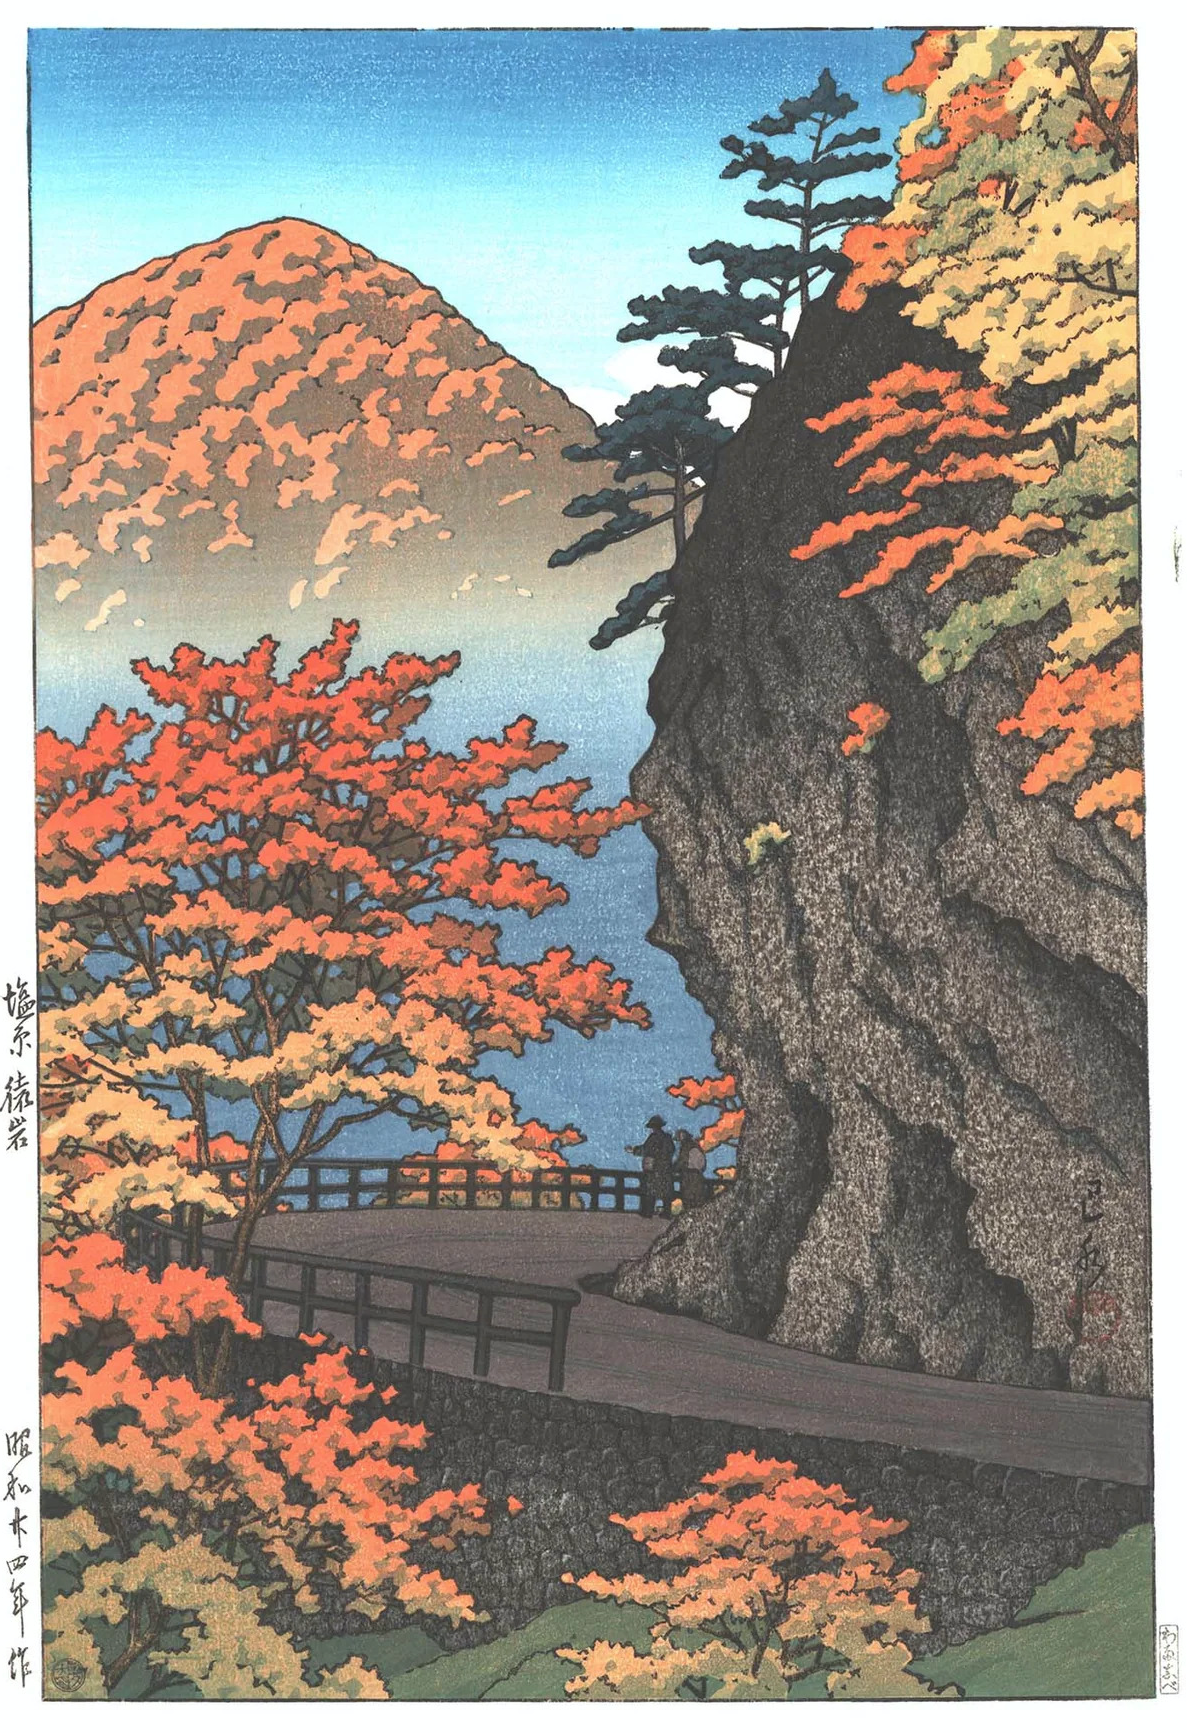 Saruiwa, Shiobara'da Sonbahar (orig. "Autumn at Saruiwa, Shiobara") by Hasui Kawase - 1949 - 38 x 24.4 cm özel koleksiyon